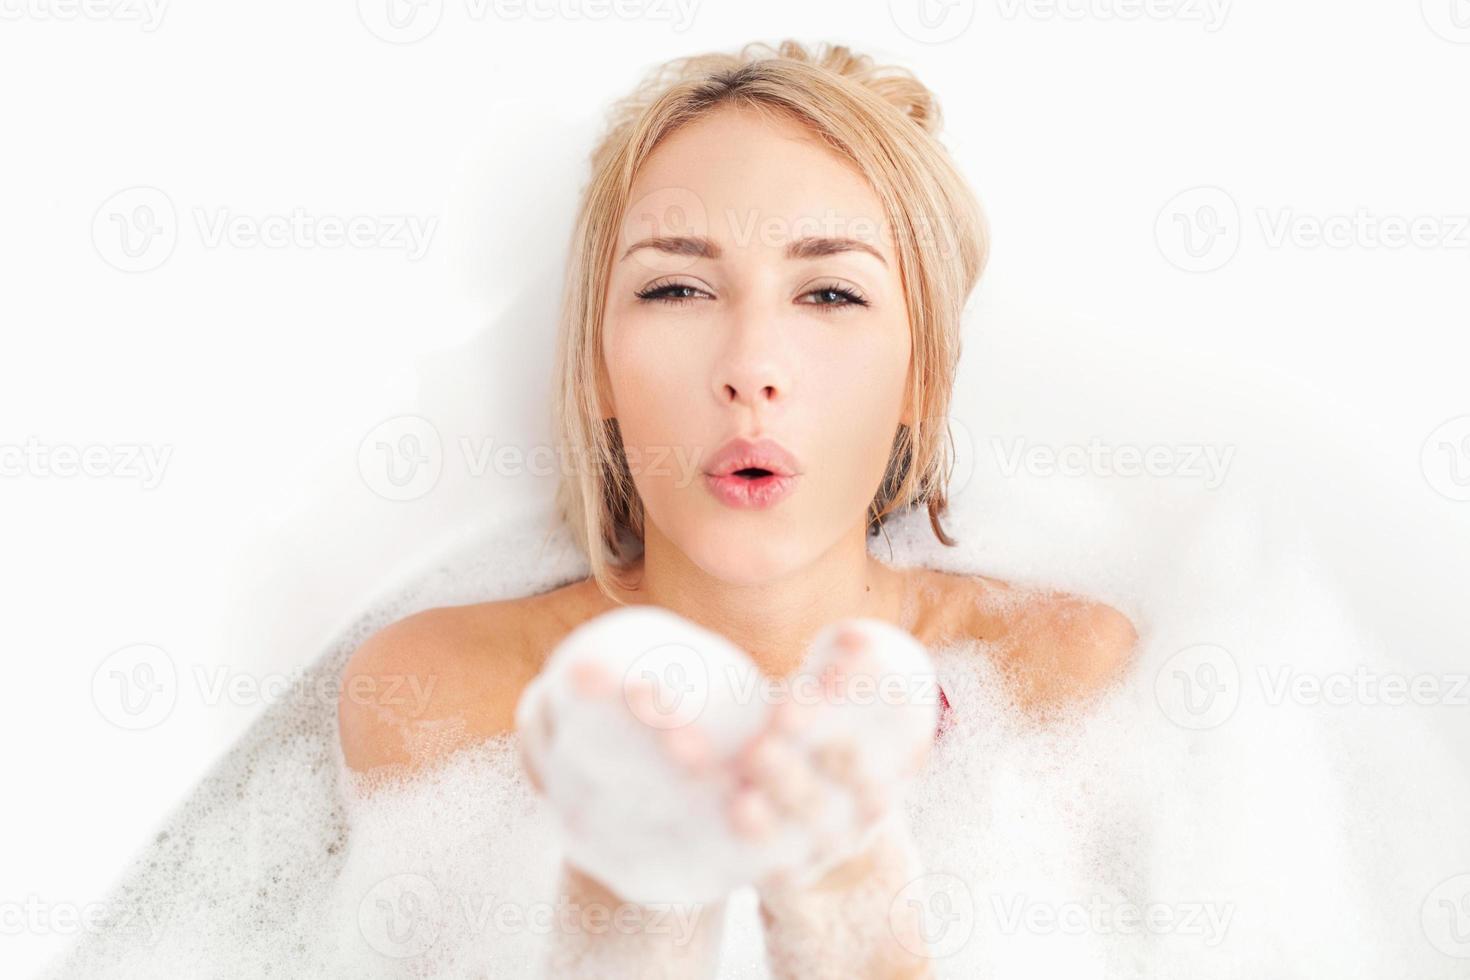 bain de beauté. jeune femme ludique allongée dans une baignoire pleine de mousse savonneuse et soufflant un baiser d'air photo